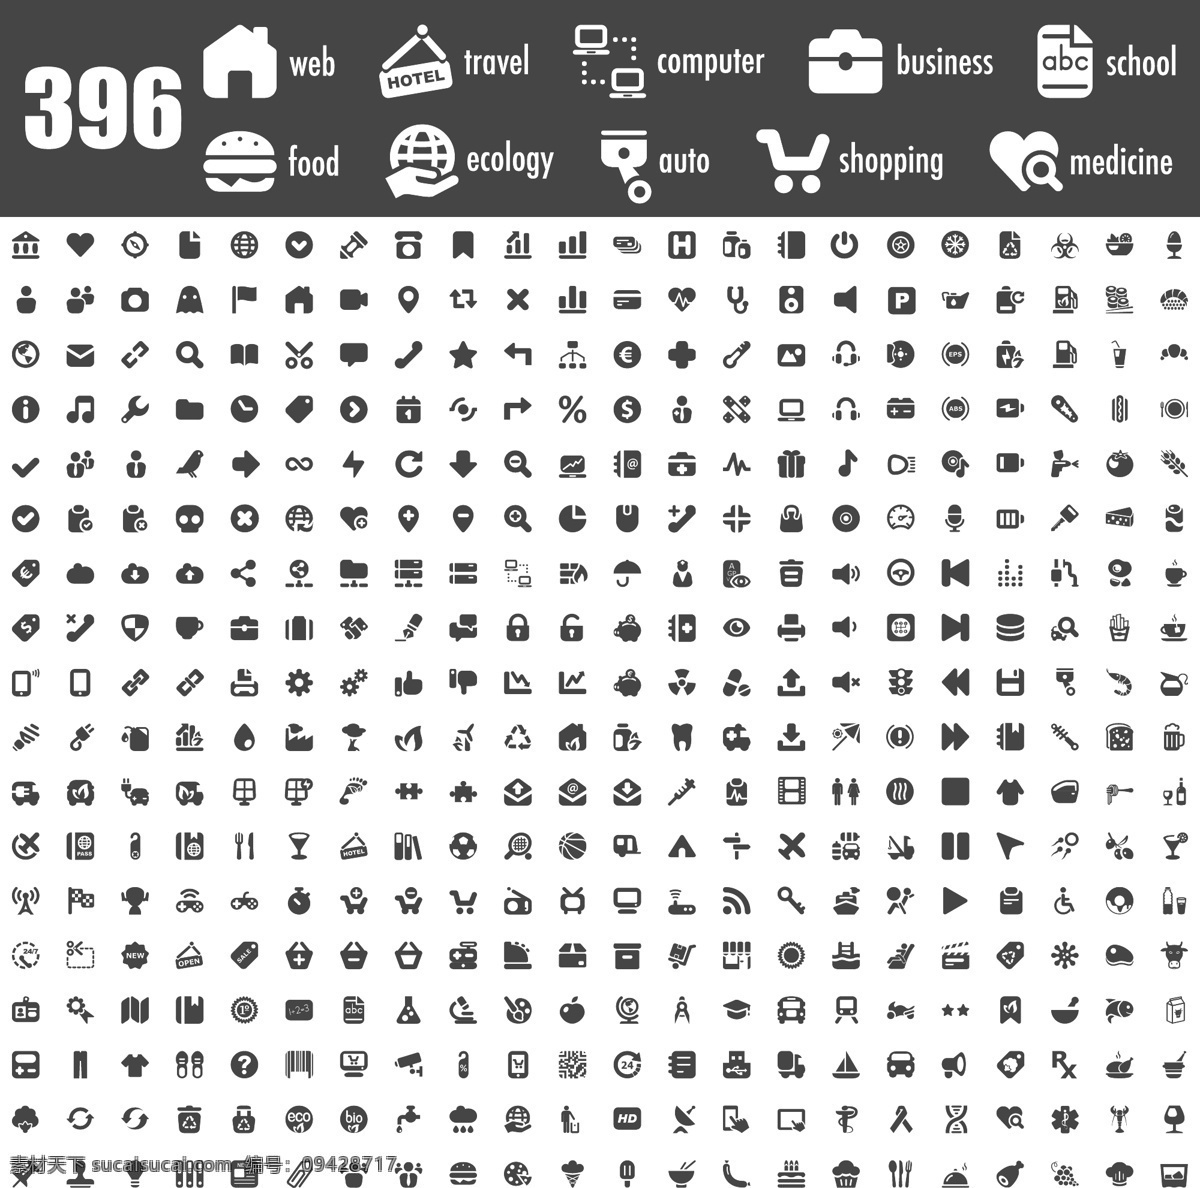 黑色图标合集 网络 旅行 电脑 社交 购物 黑色图标 图标 图标合集 标志图标 矢量素材 白色